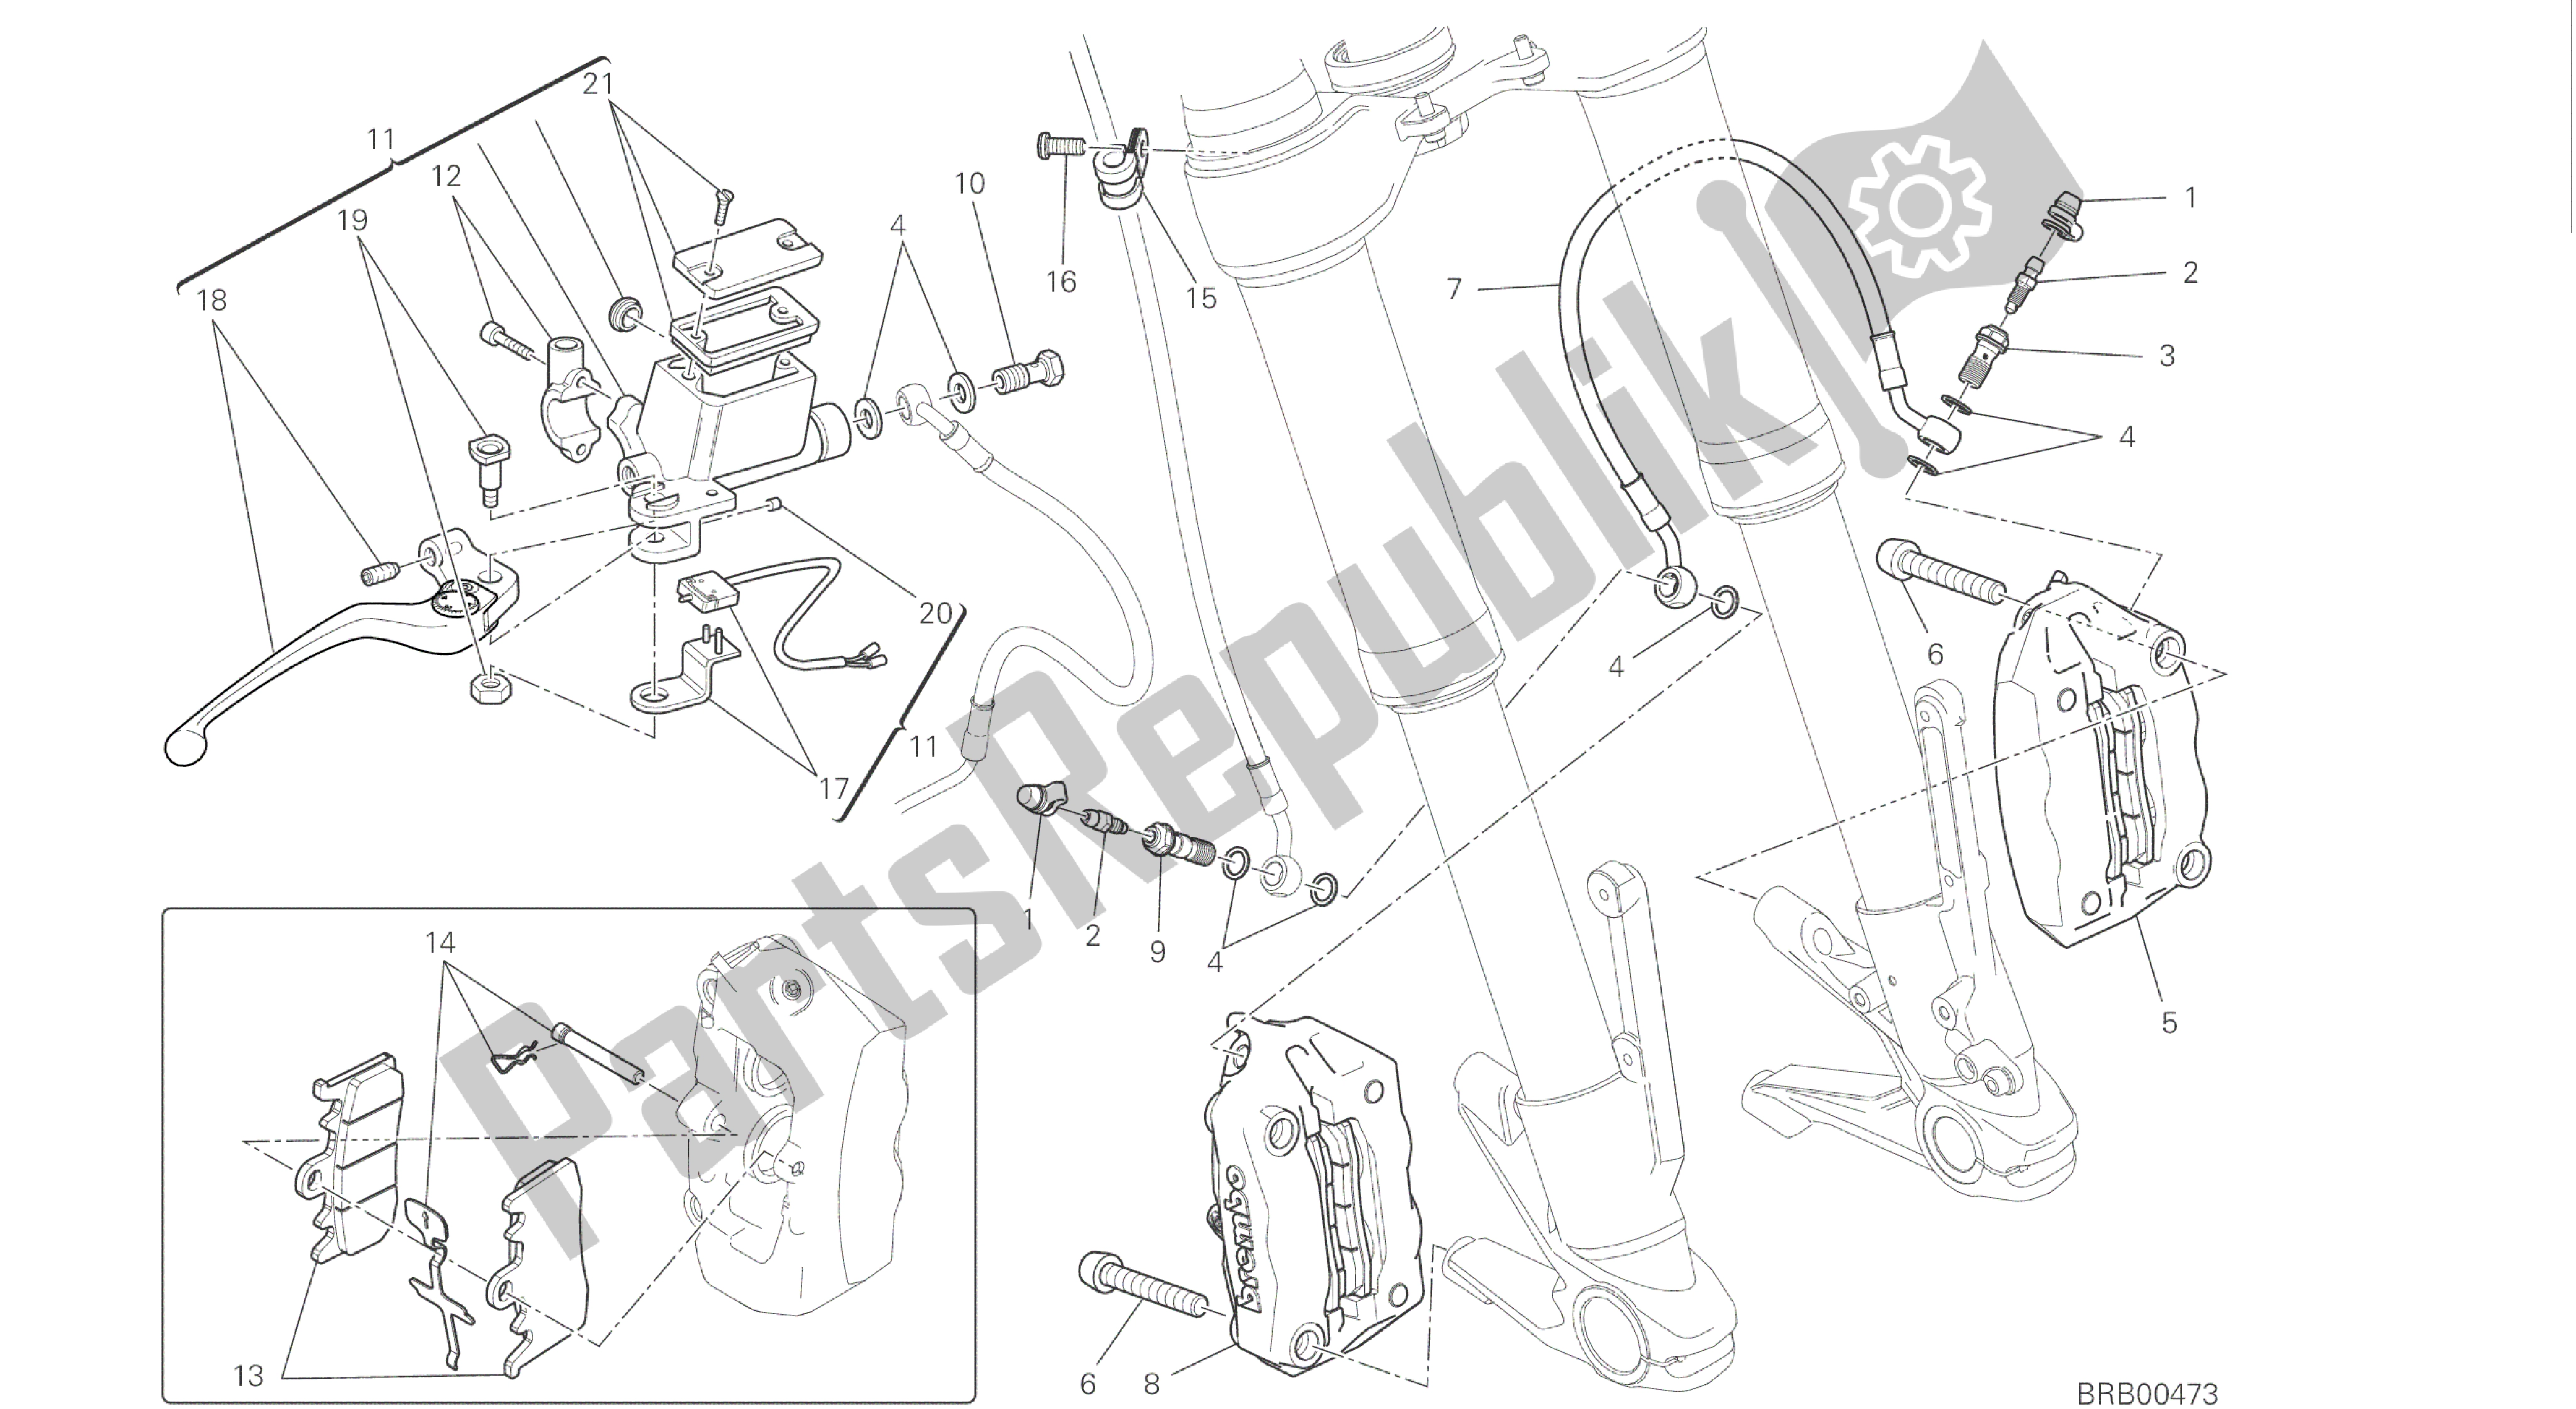 Alle onderdelen voor de Tekening 024 - Voorremsysteem [mod: Hyp Str; Xst: Aus, Eur, Fra, Jap, Twn] Groepsframe van de Ducati Hypermotard 821 2015